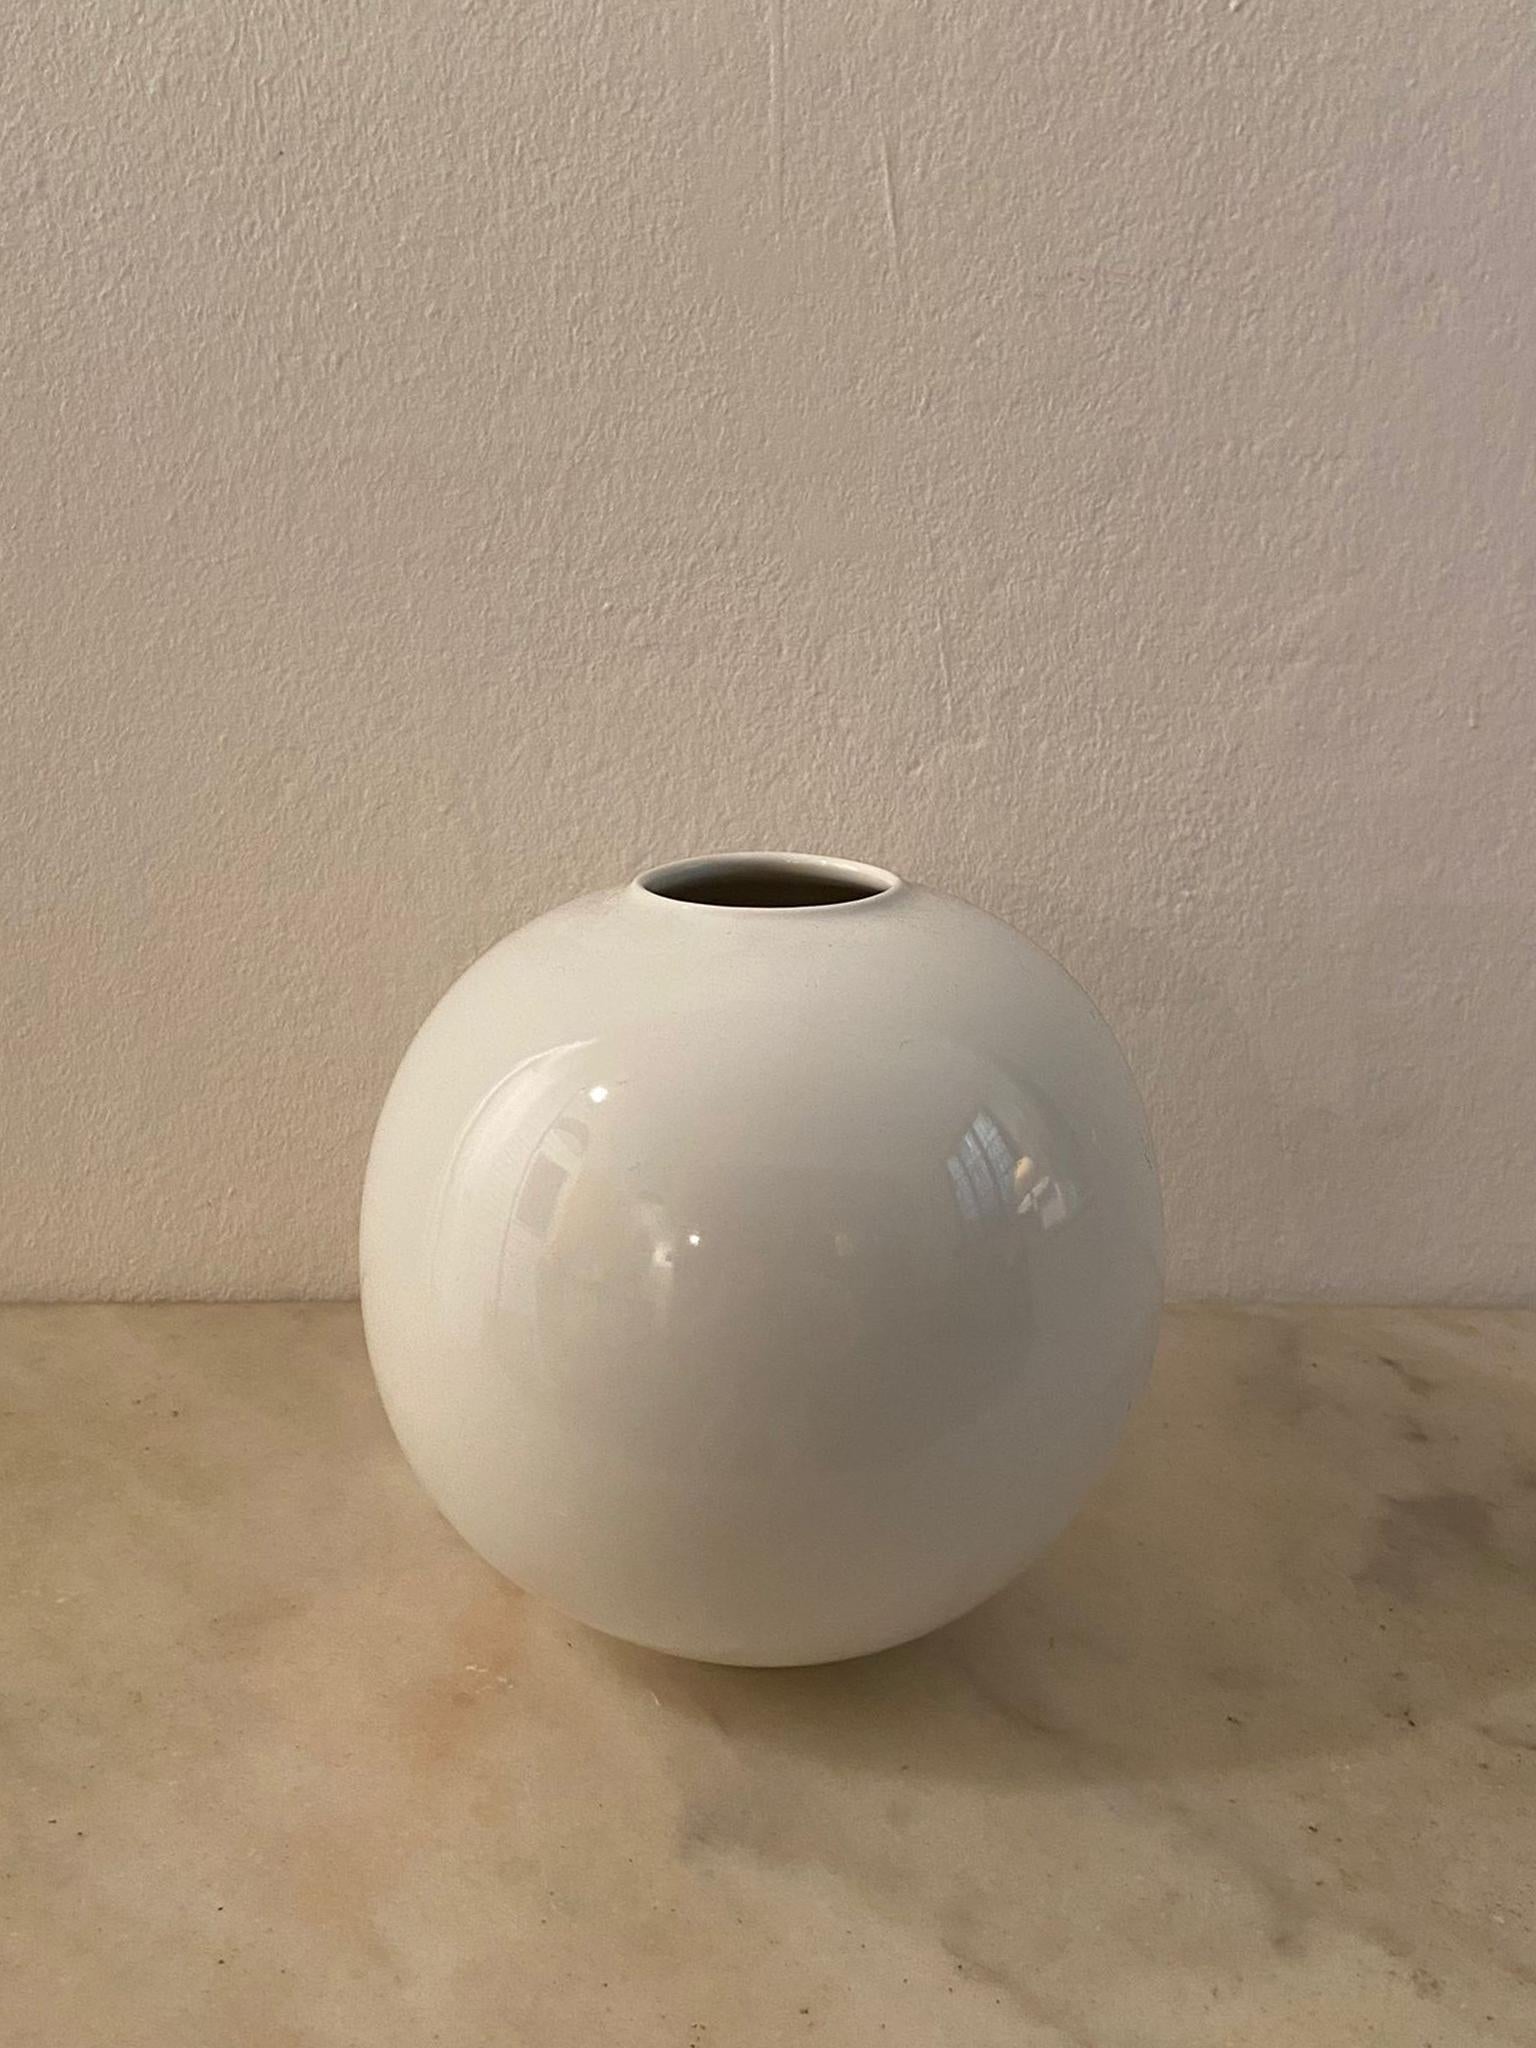 Étonnant vase blanc de l'ère spatiale des années 1970 en céramique de Gabbianelli, fabriqué en Italie.